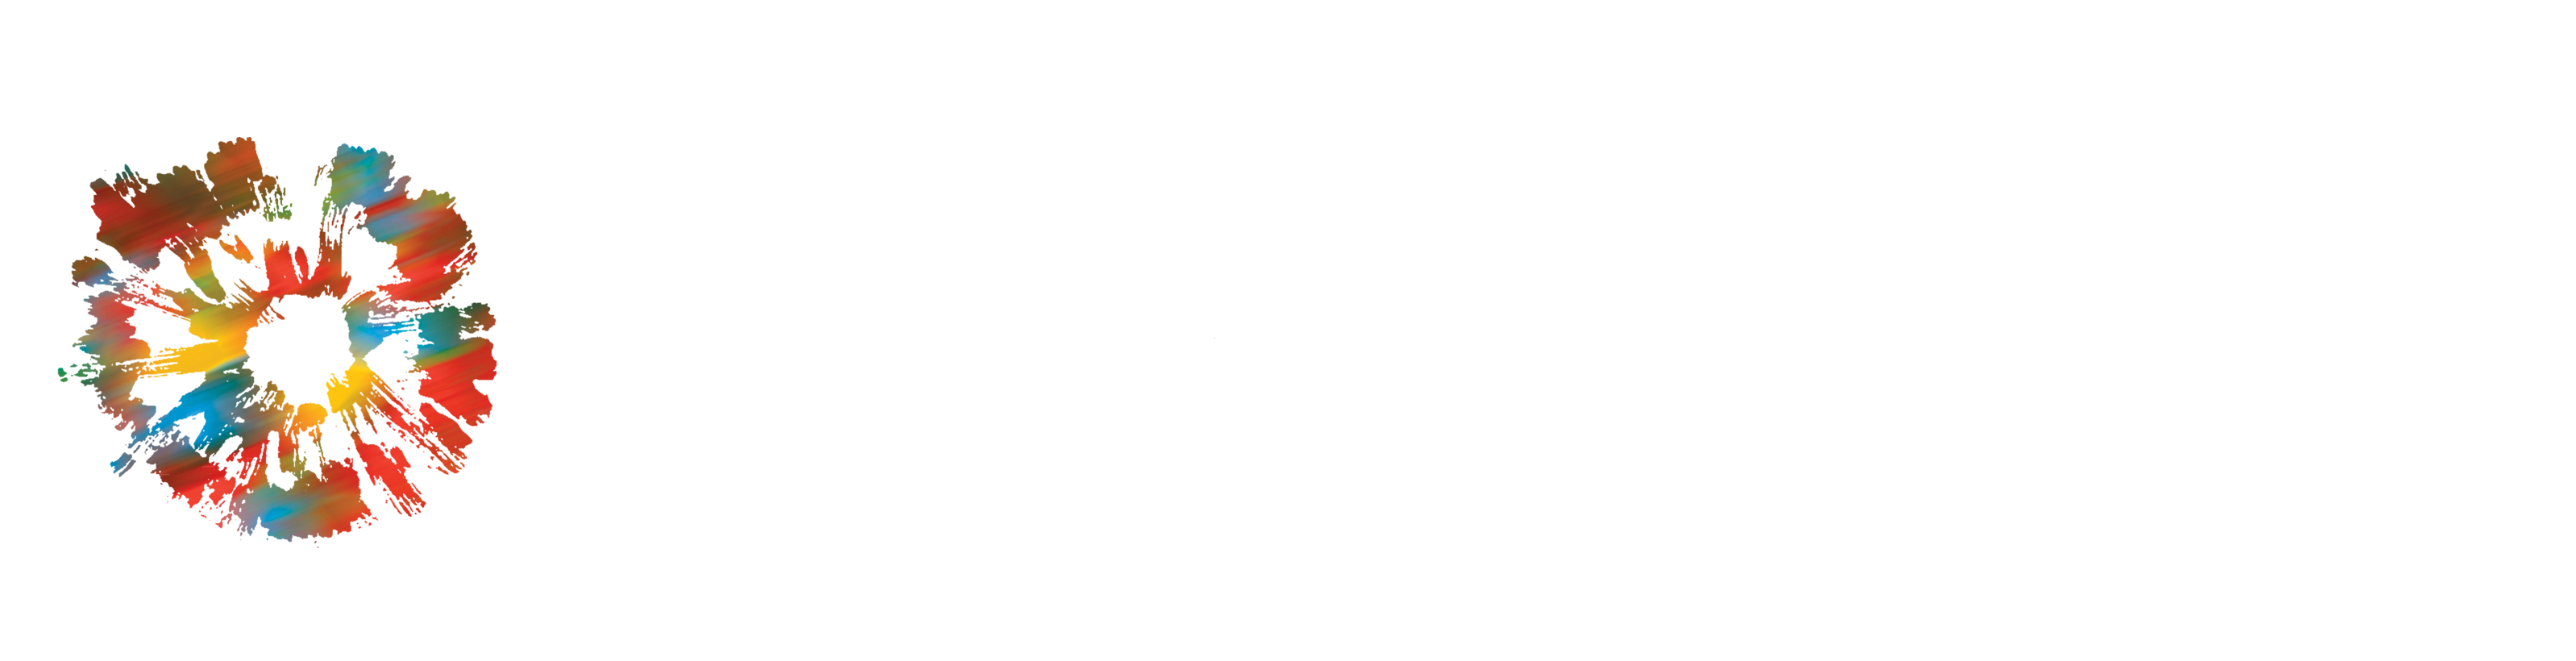 Logo_officiel_Institut_de_pastorale_blanc_1.png